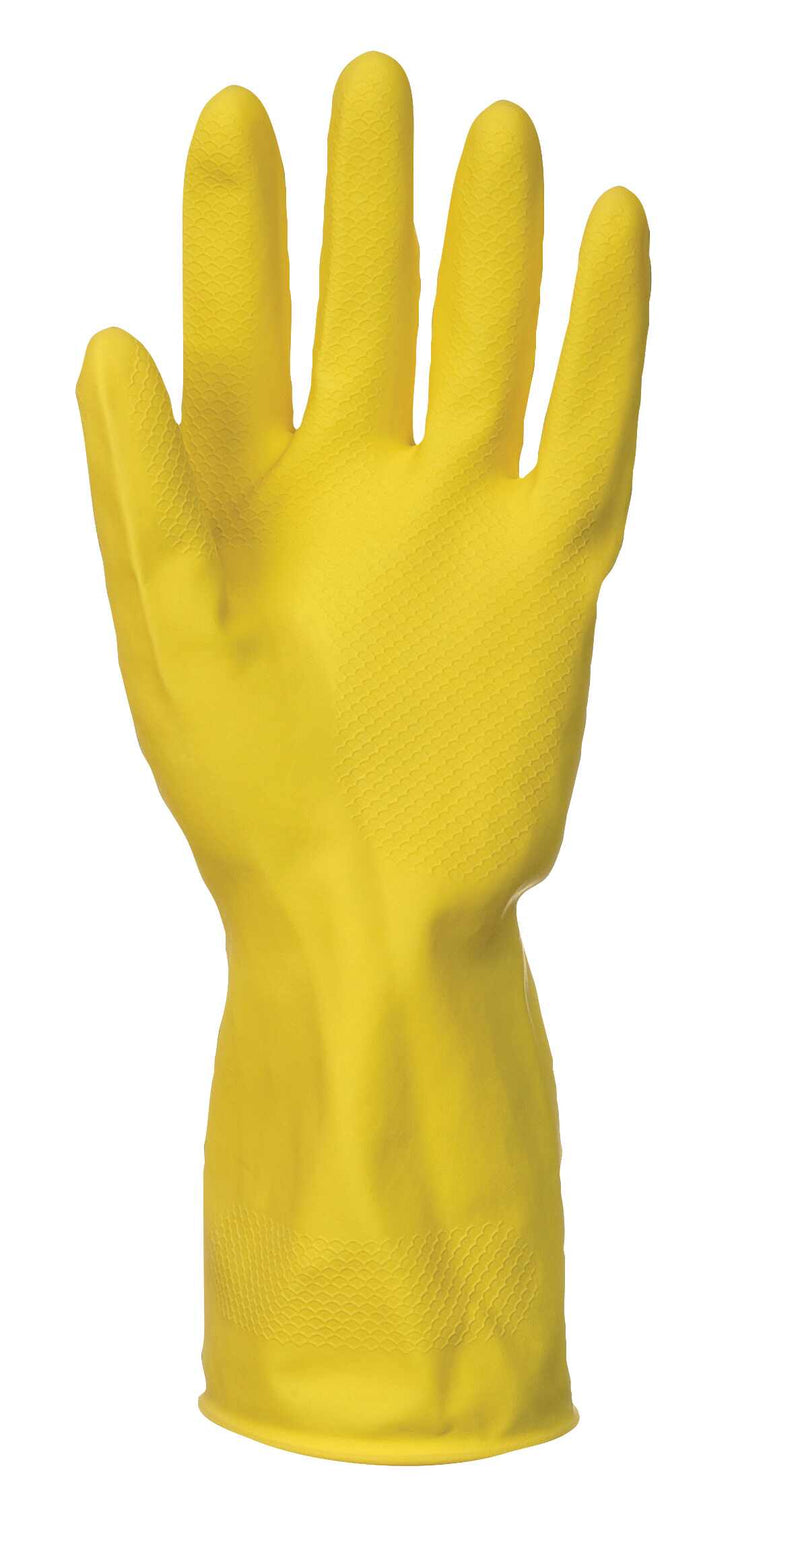 Household Latex Glove (240 Pairs)